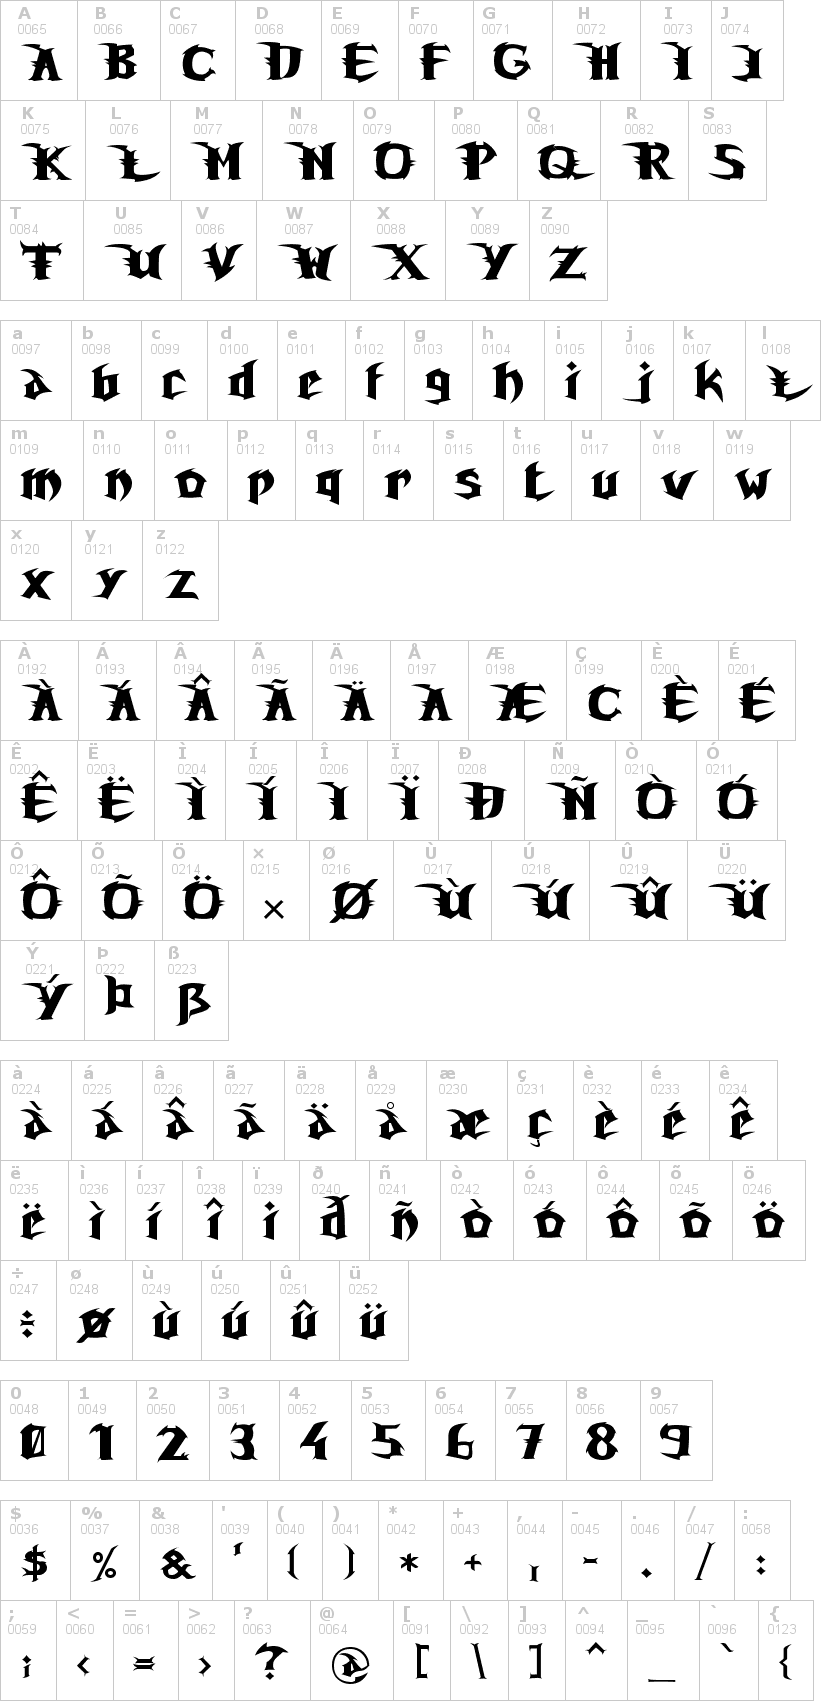 Lettere dell'alfabeto del font unreal-tournament con le quali è possibile realizzare adesivi prespaziati